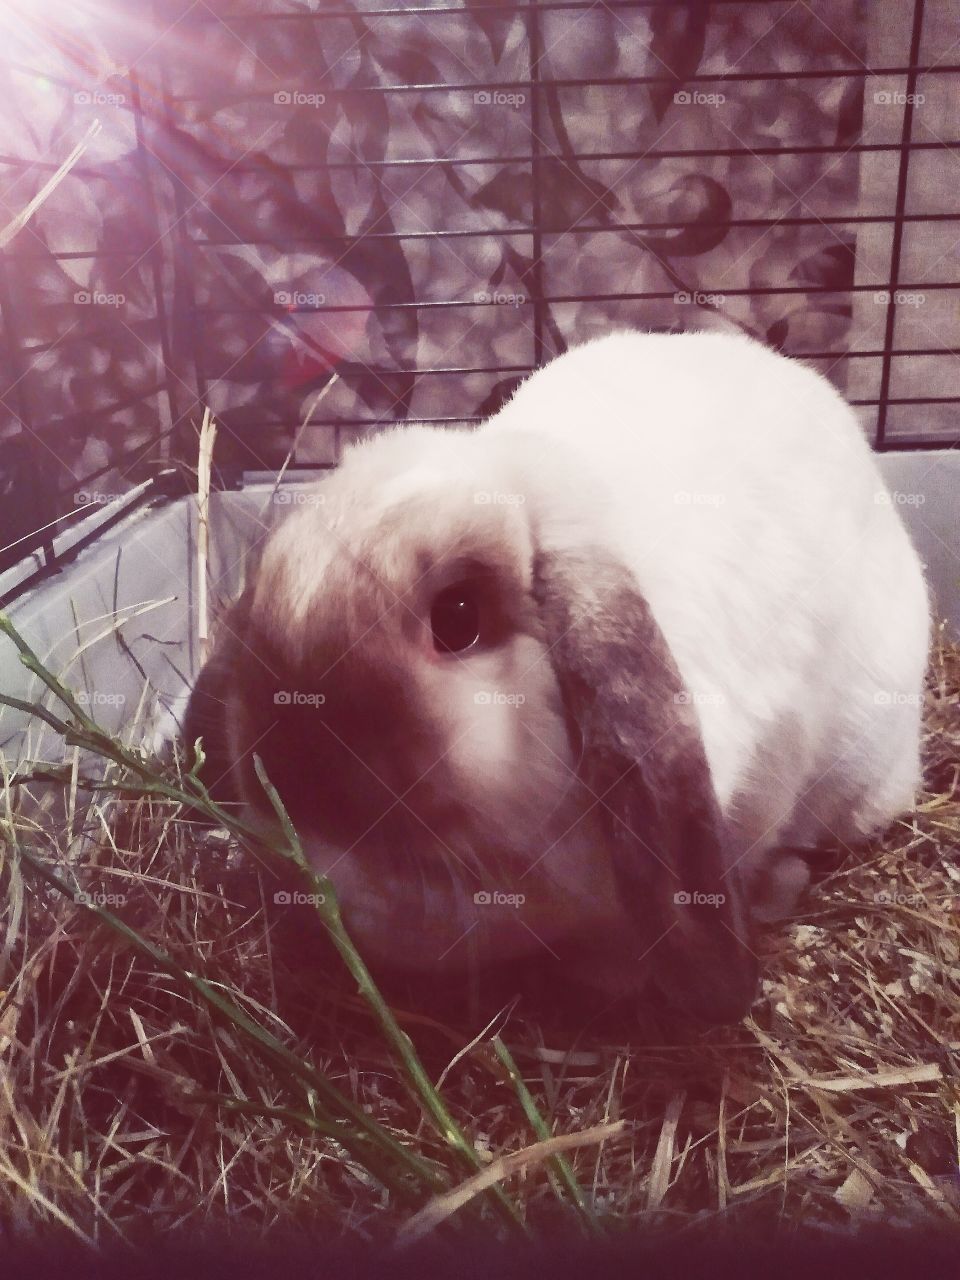 My rabbit.